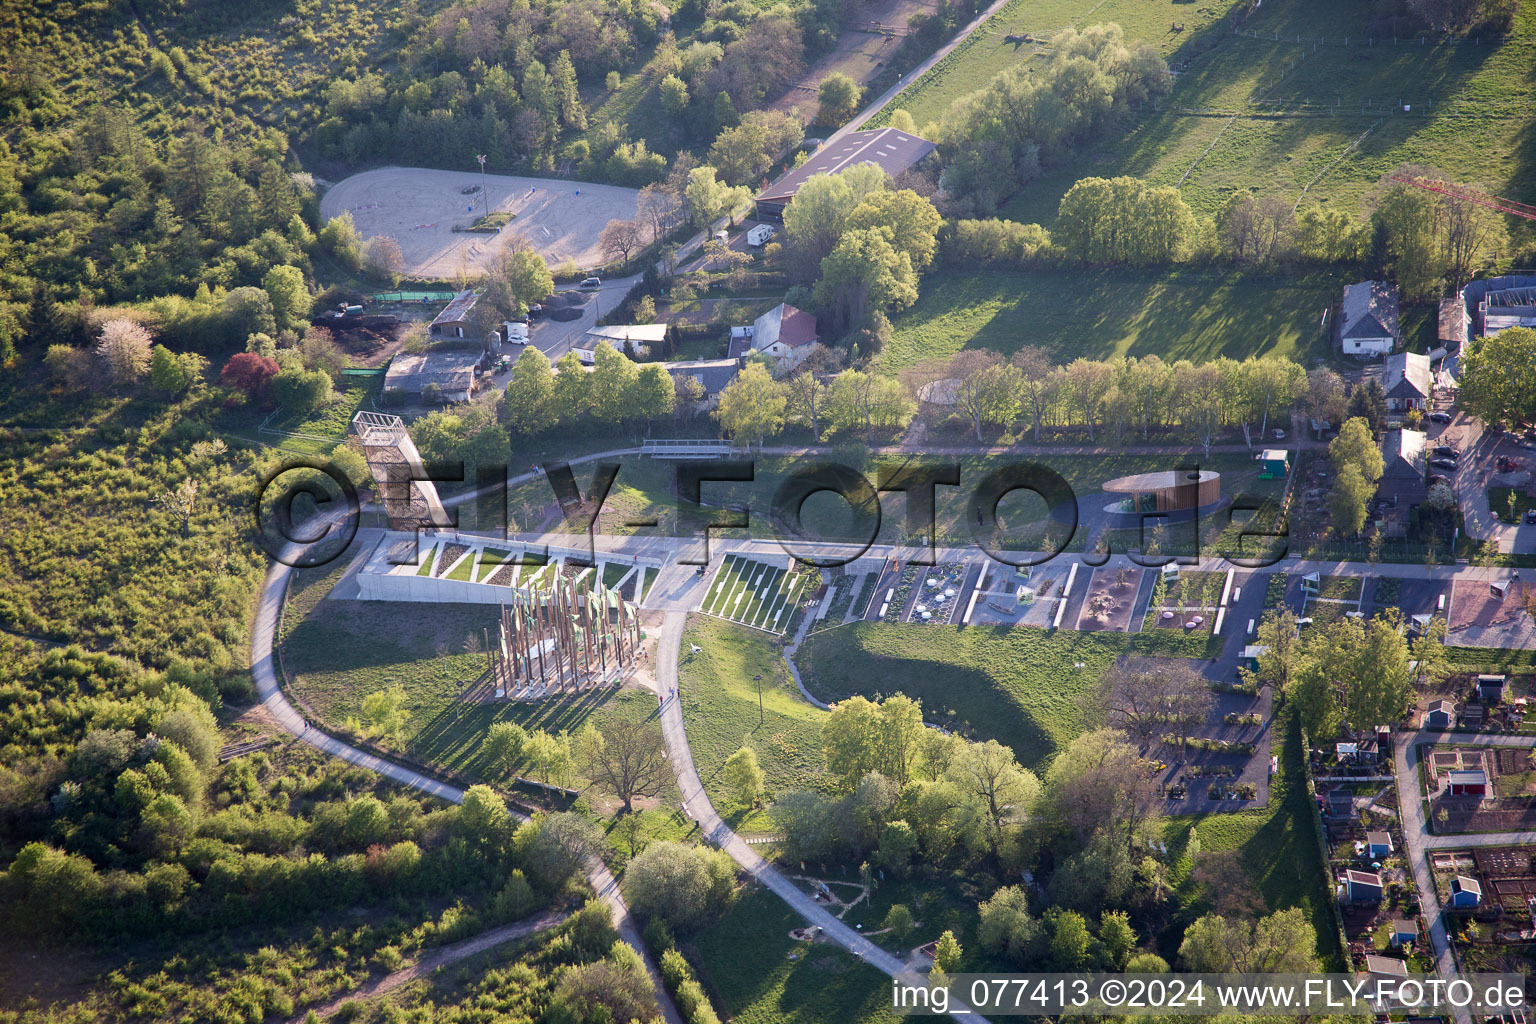 Gelände der Landesgartenschau (Landesgartenschau) 2015 mit assymetrischen Beeten und Kunstinstallationen in Landau in der Pfalz im Bundesland Rheinland-Pfalz, Deutschland